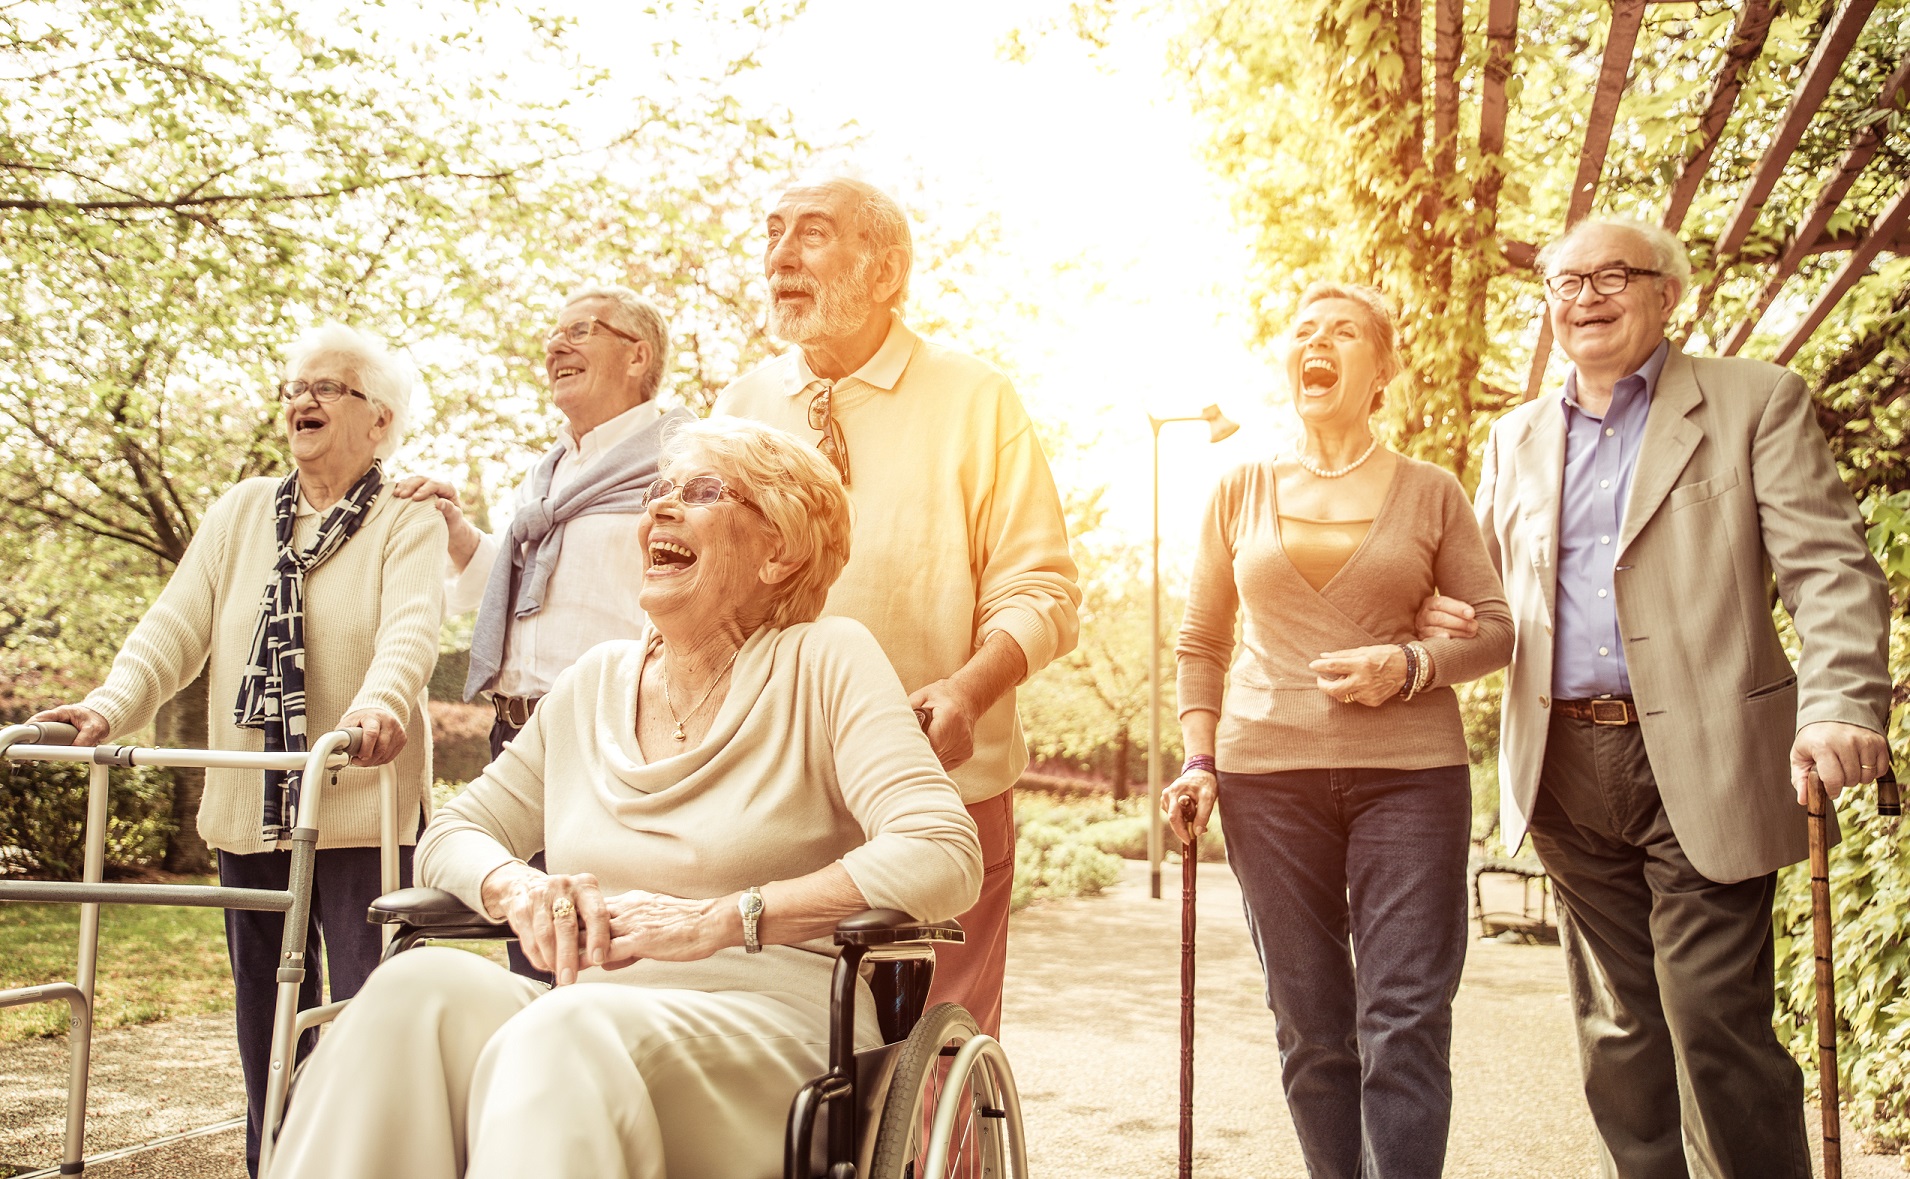 La vitamina D, gli Omega-3 e l’esercizio fisico possono proteggere efficacemente gli anziani – guarigione dall’esercizio